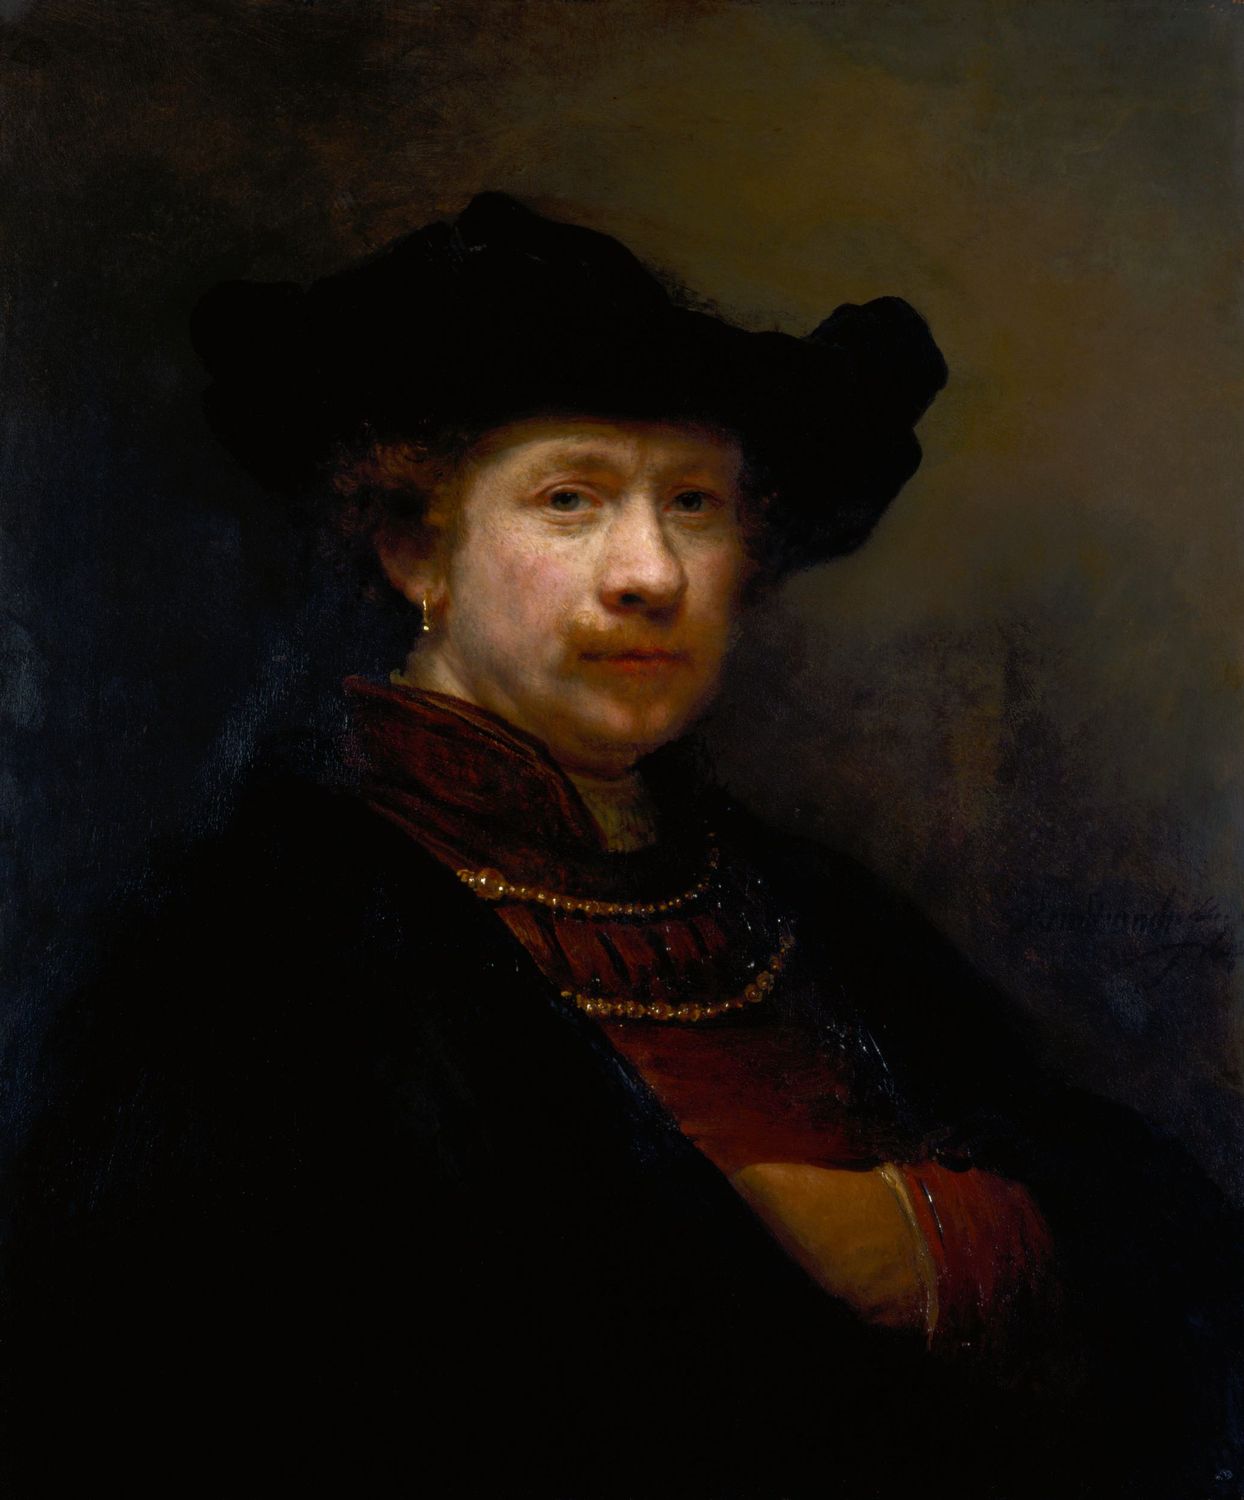 Рембрандт. Автопортрет. 1642